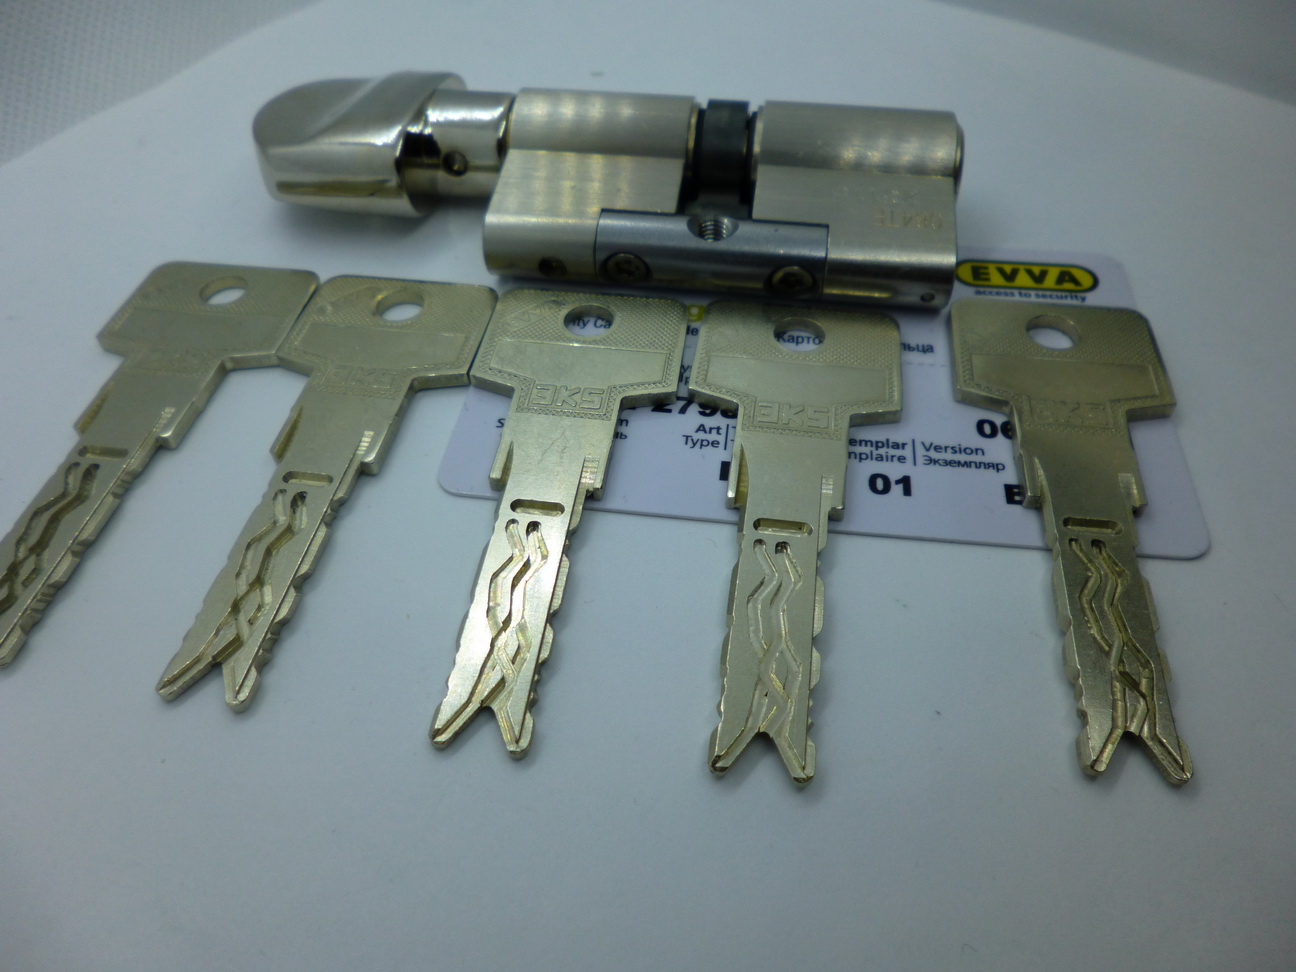 Цилиндр EVVA 3KS ключ/ключ (3 ключа)